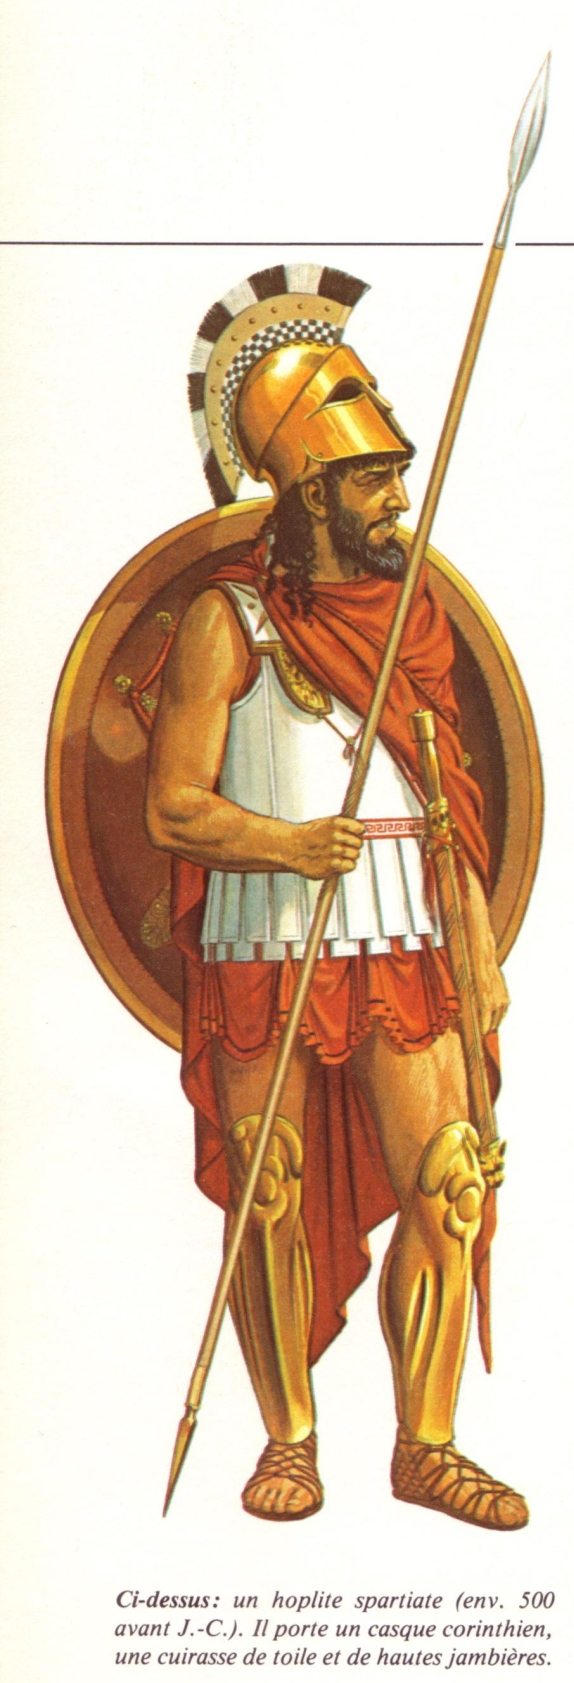 The Emergence of Hoplite Warfare 900–525 BC I